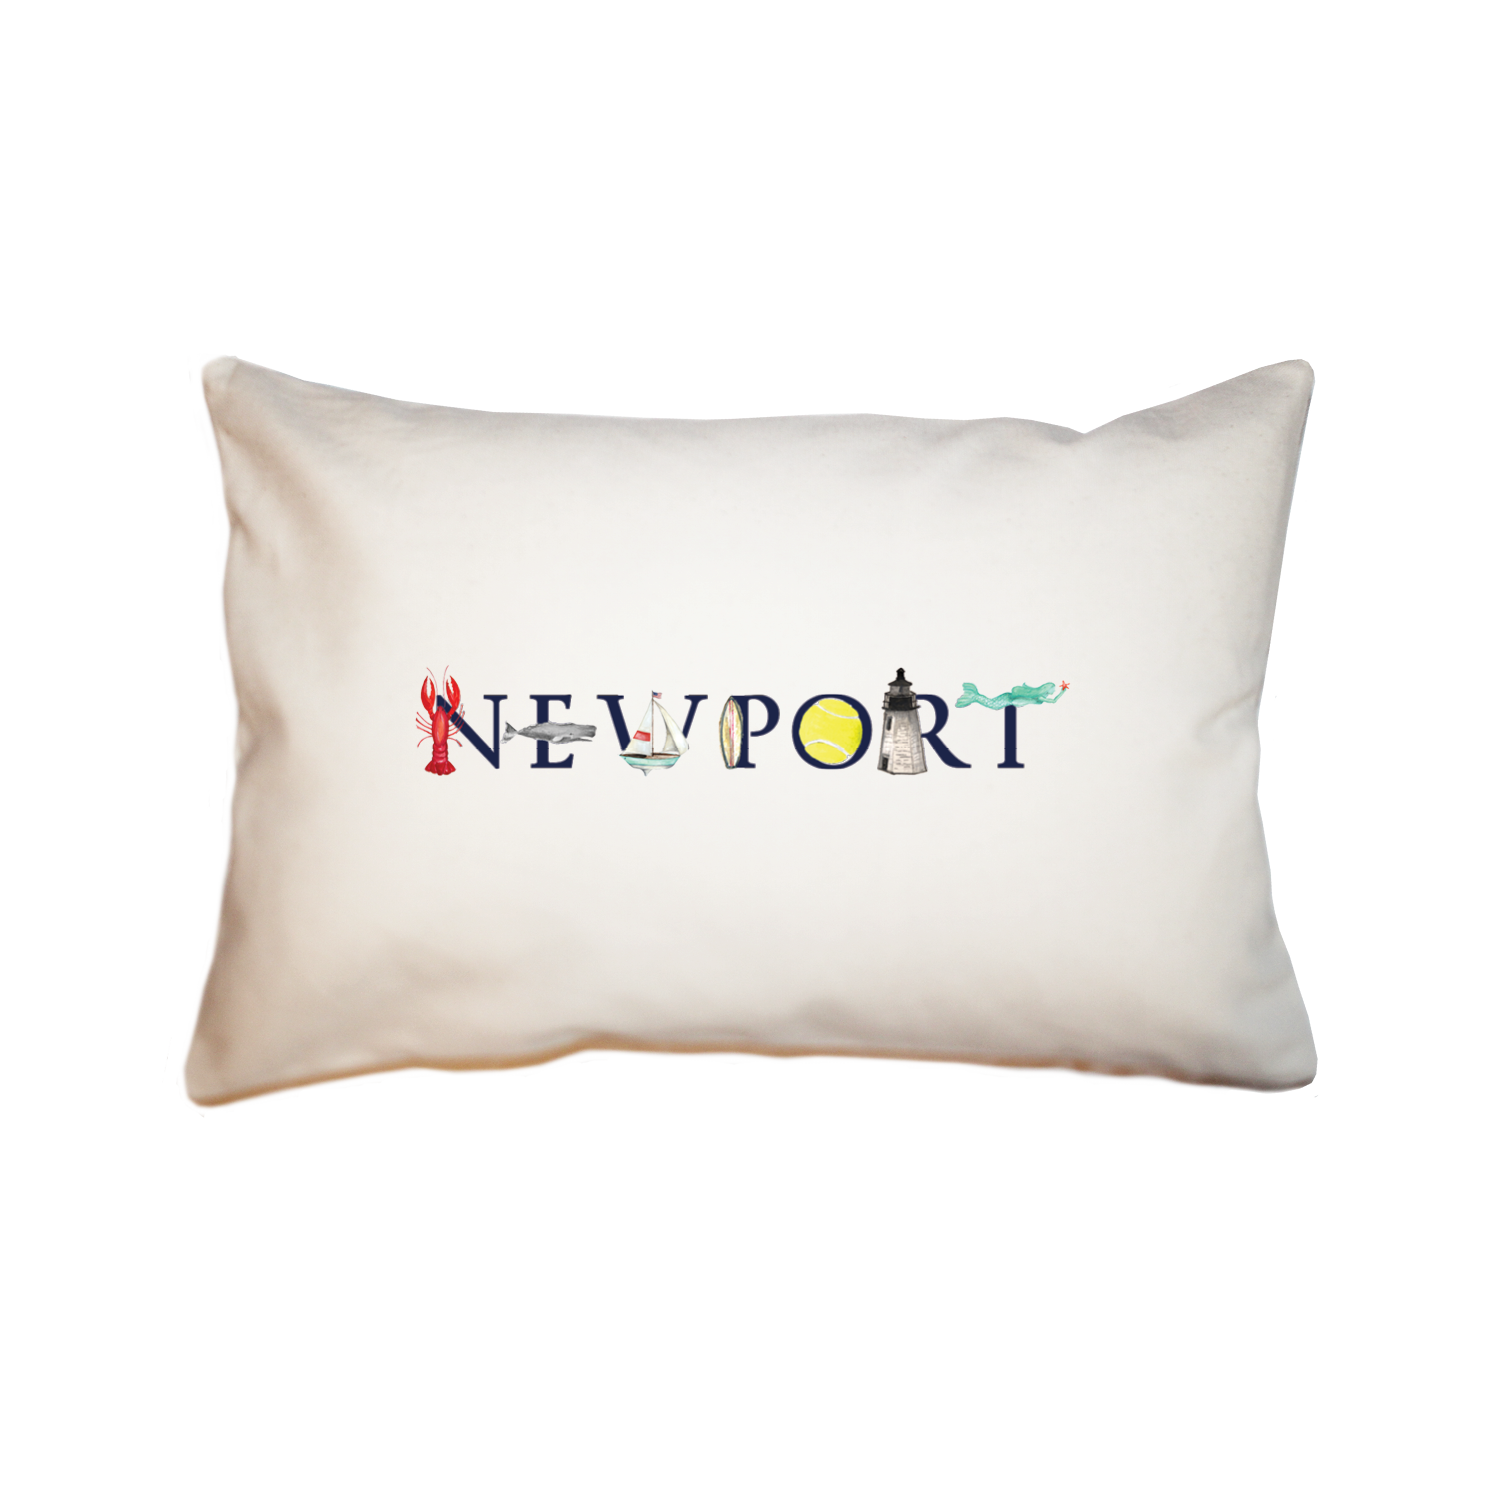 Newport large rectangle pillow